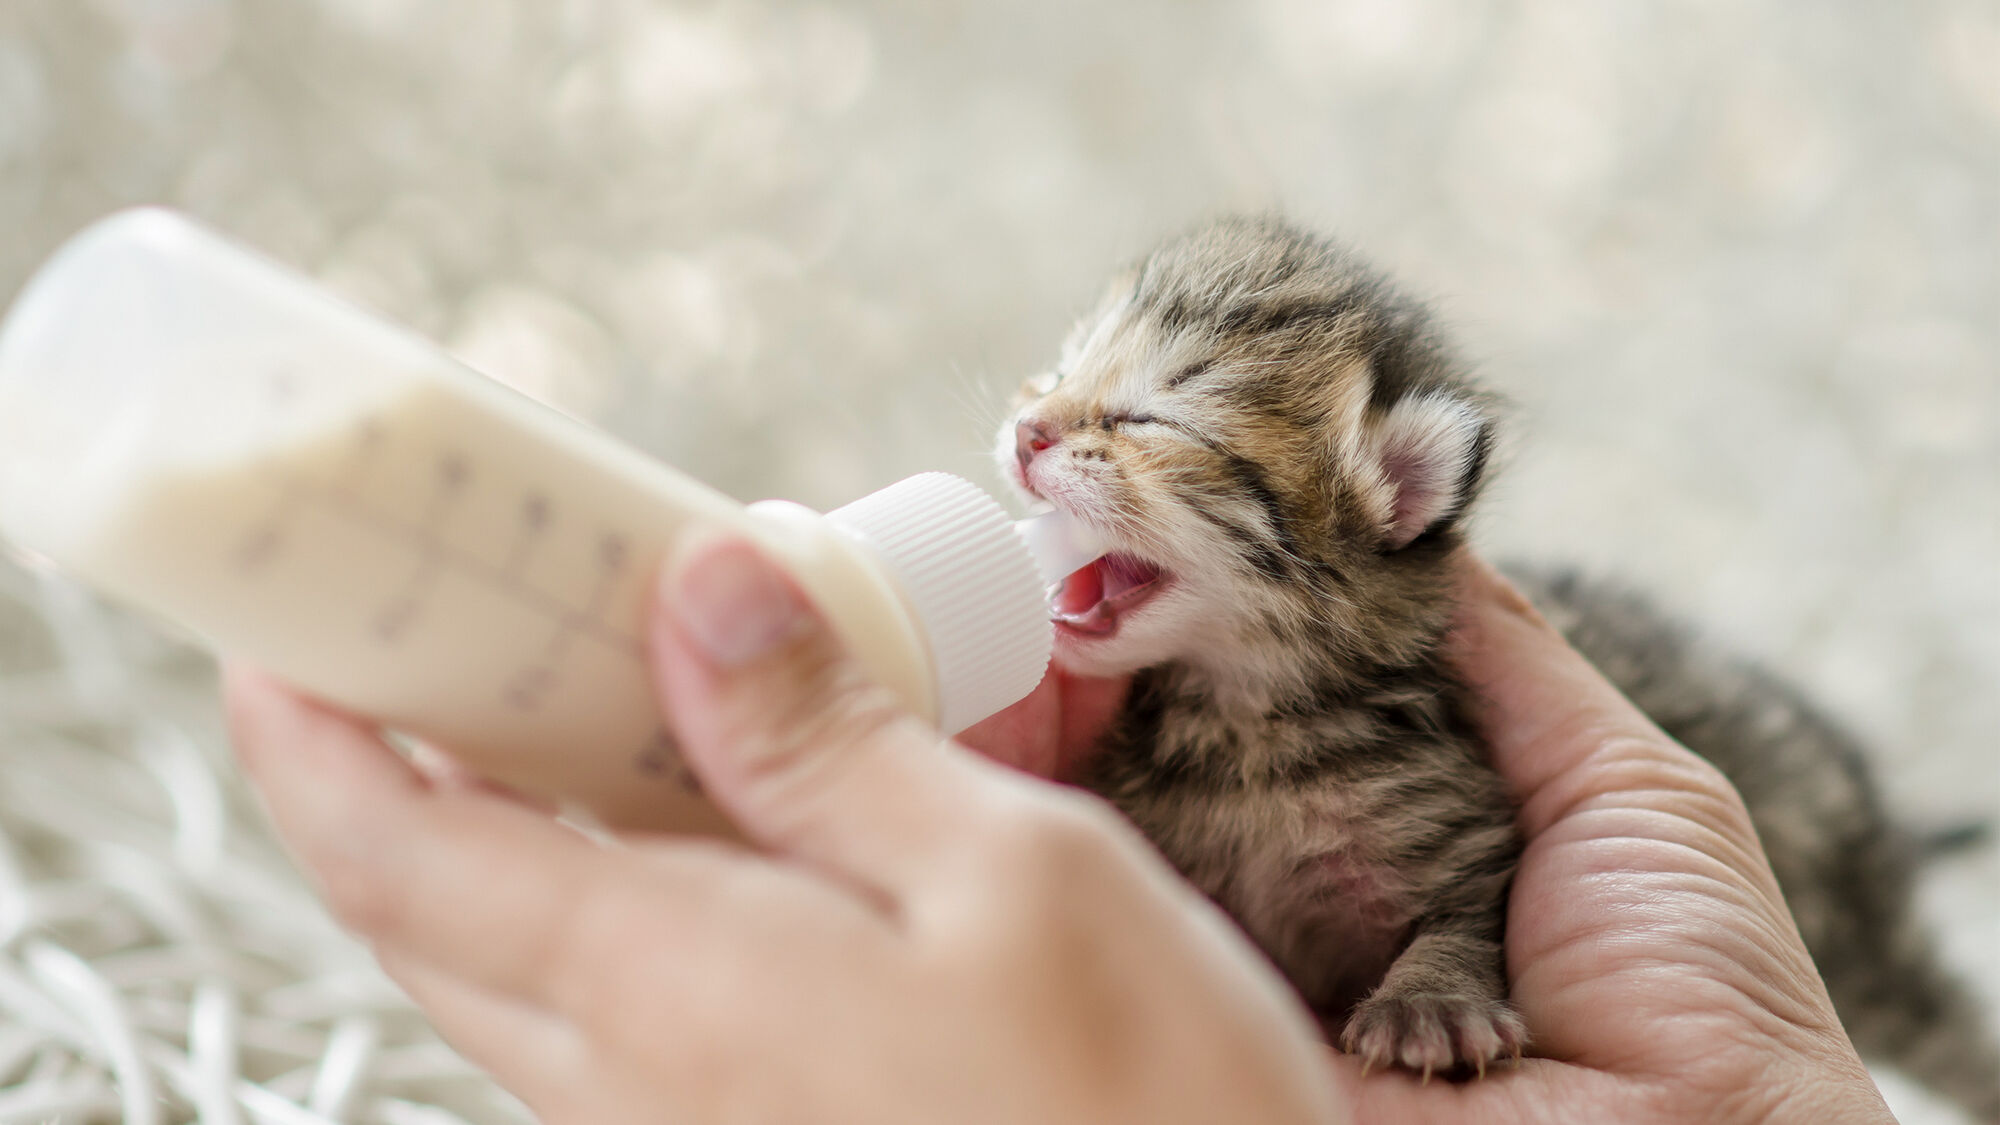 Newborn kitten being bottle-fed by breeder